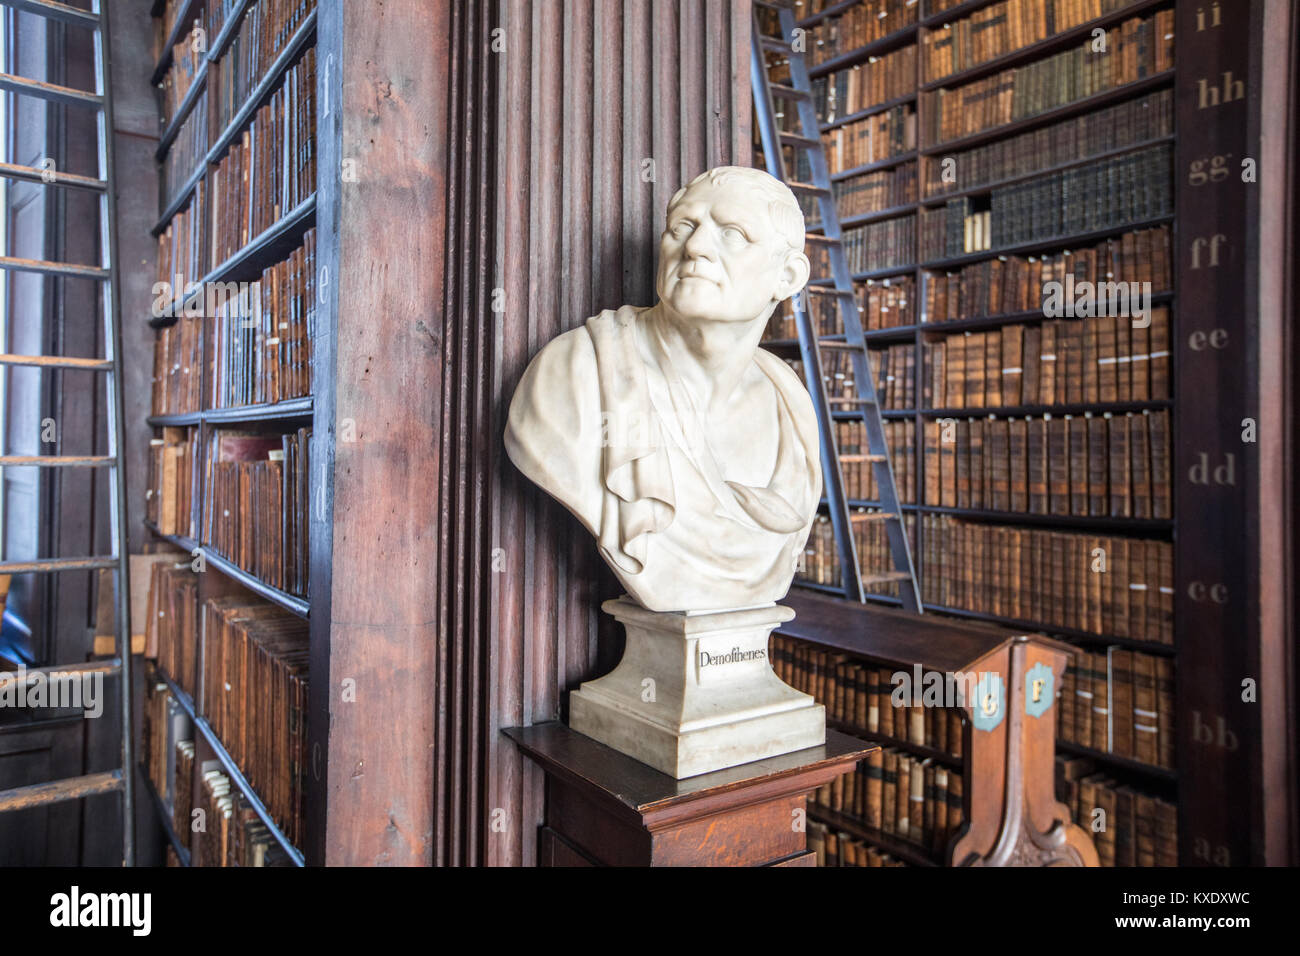 Sculpture de Démosthène, la Chambre, la bibliothèque de Trinity College, Dublin, Irlande Banque D'Images